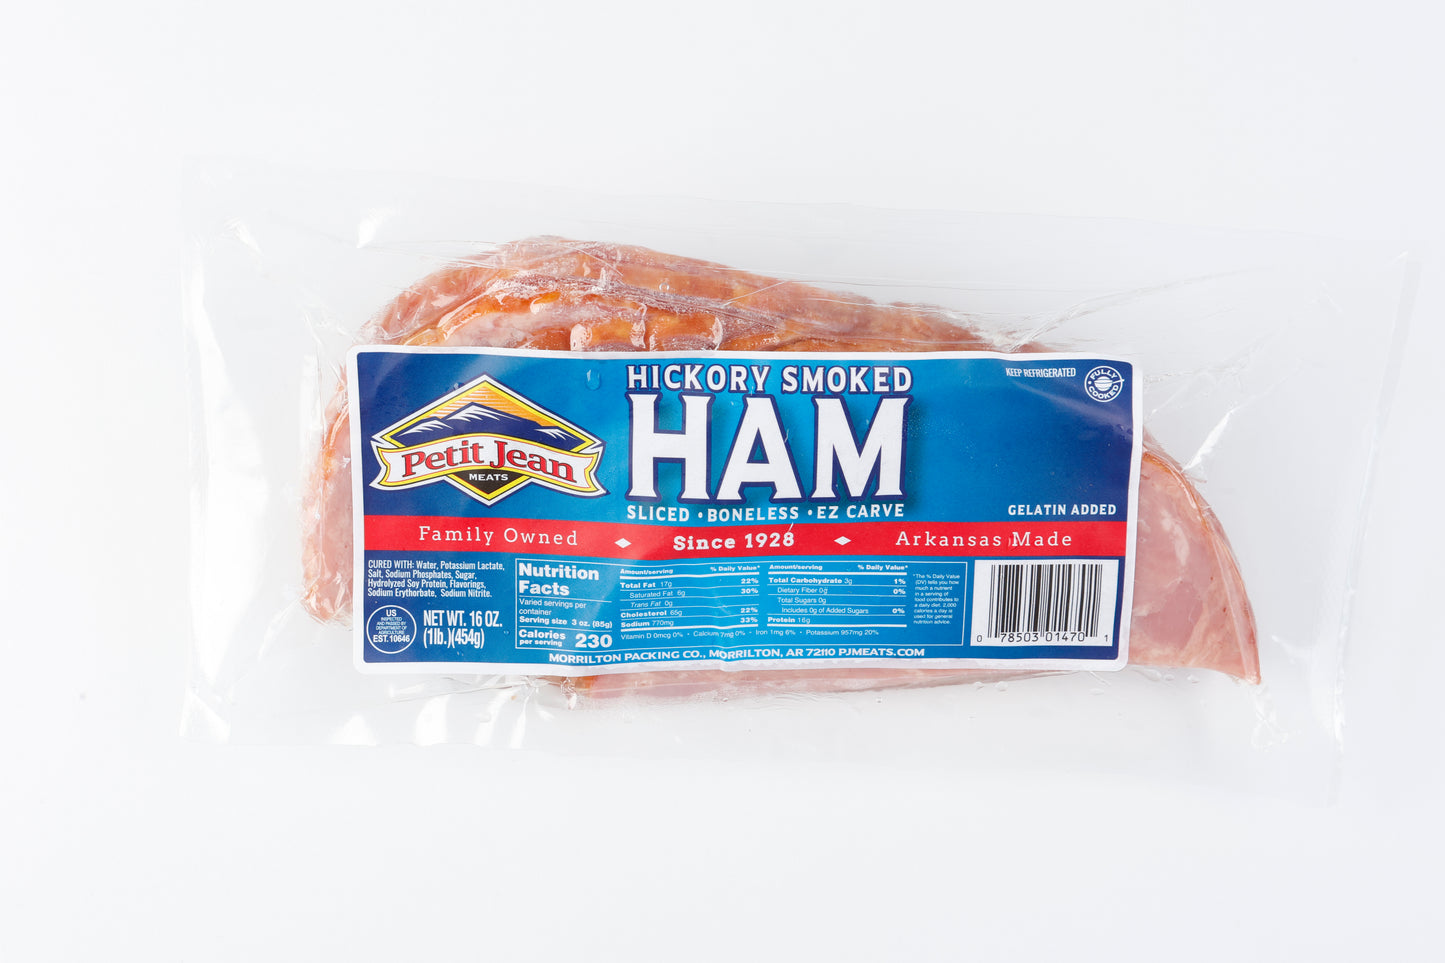 EZ Carve Smoked Ham Slices 12oz